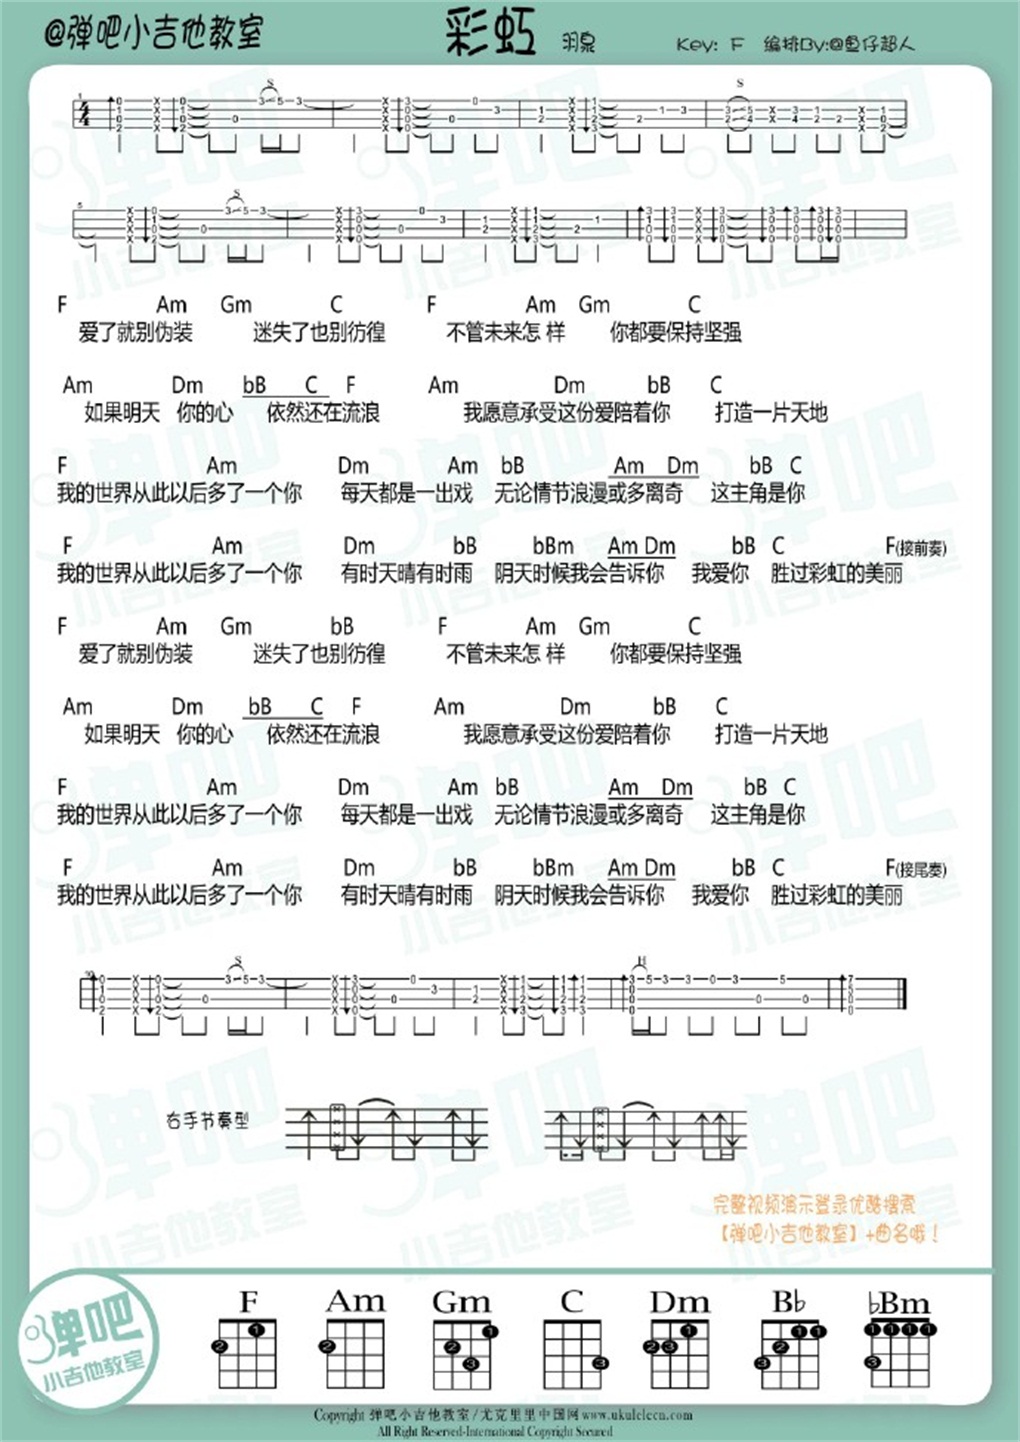 羽泉《彩虹》尤克里里谱-Ukulele Music Score